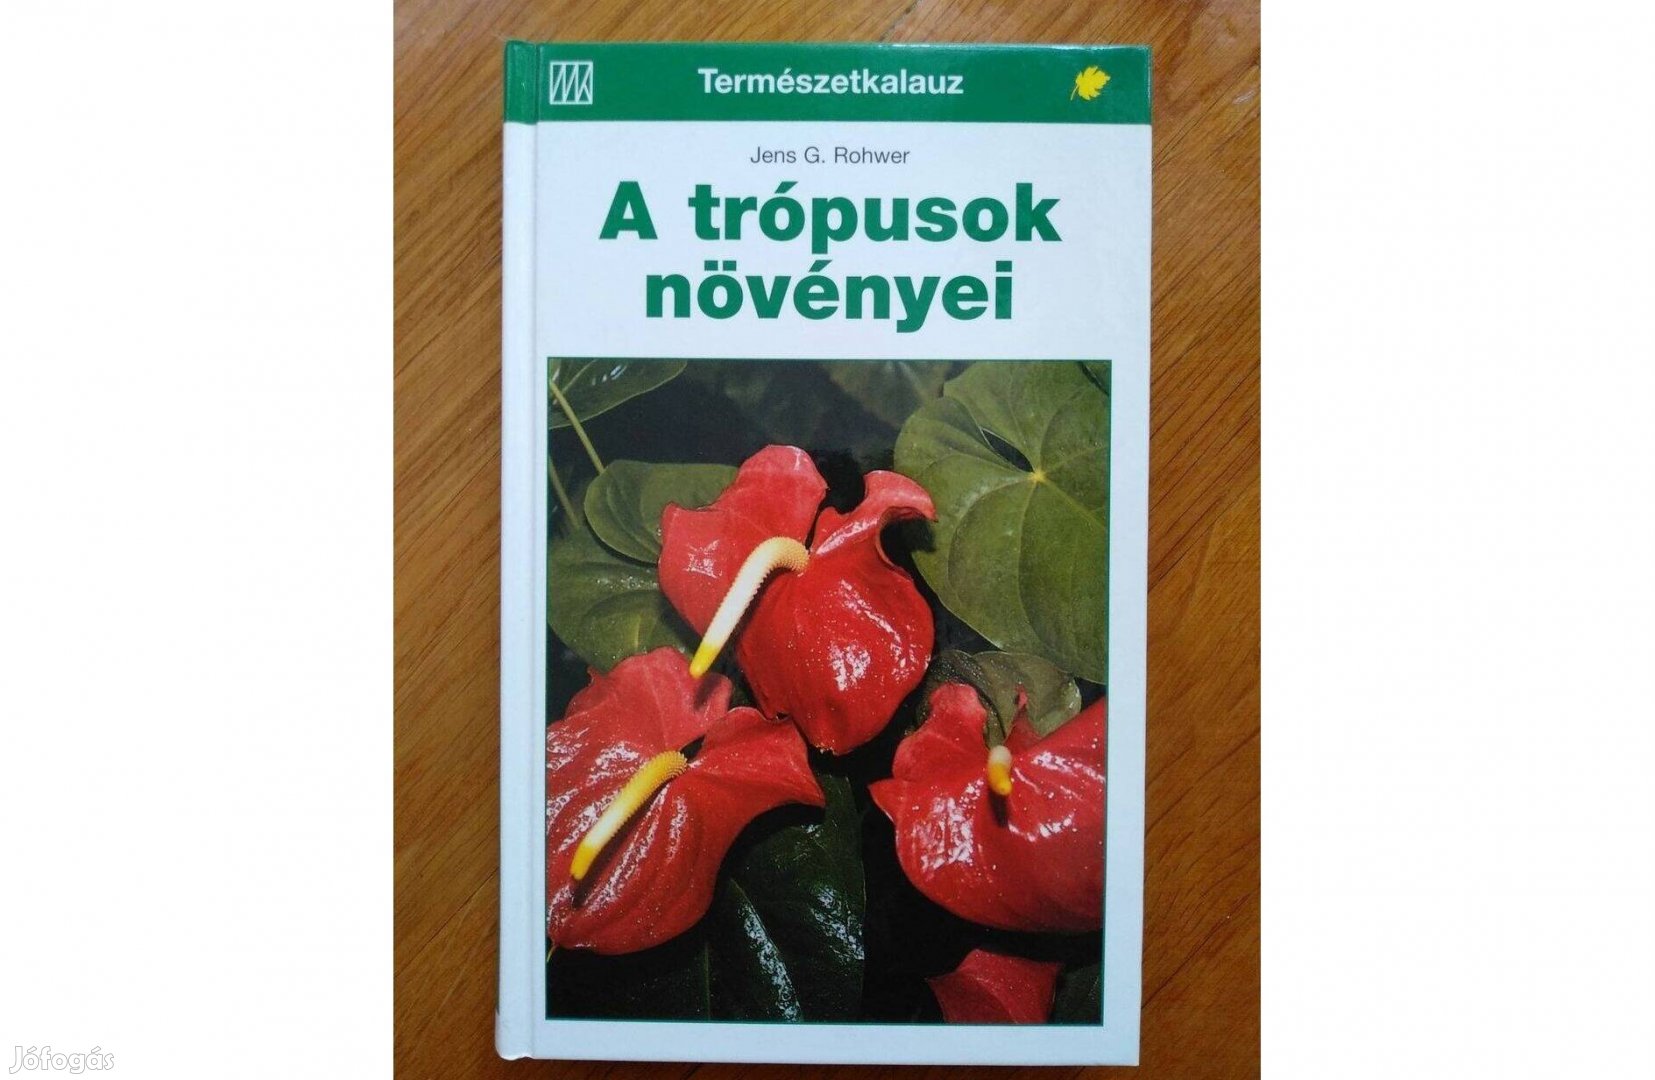 Könyv Jens G. Rohwer A trópusok növényei, ajándéknak is kiváló